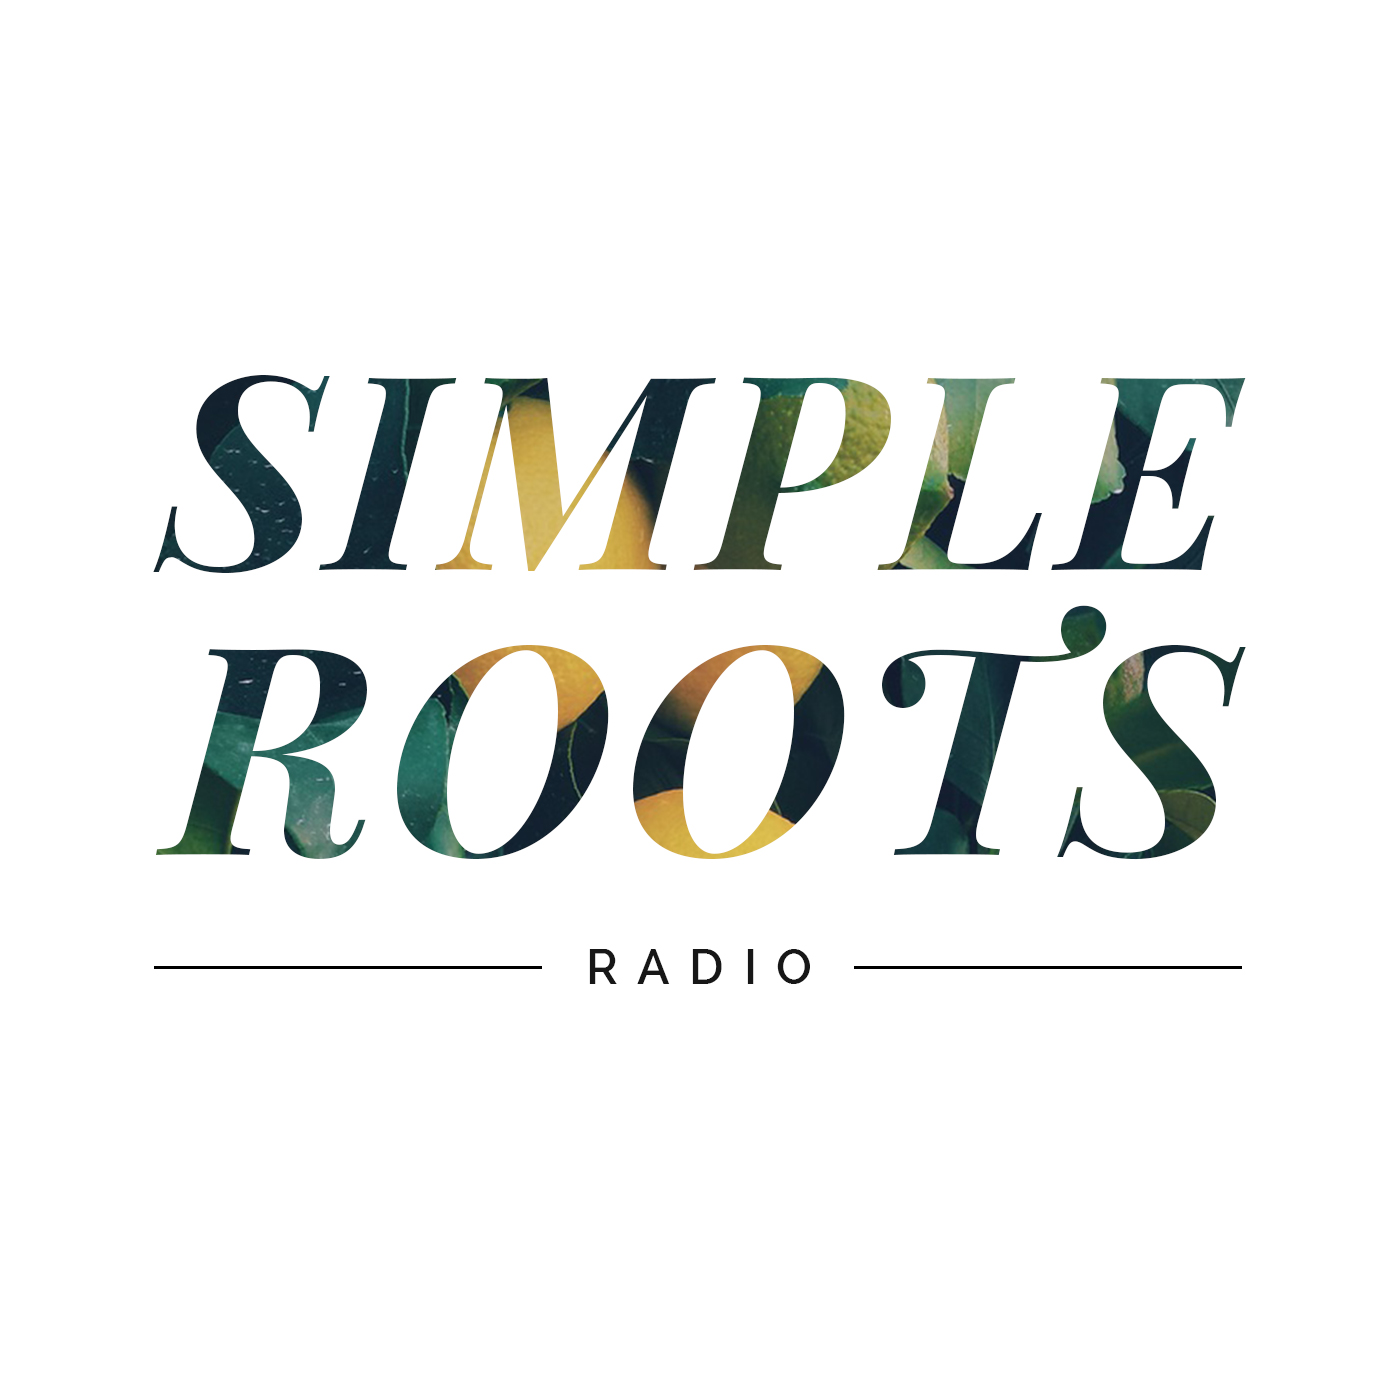 Simple Roots Radio